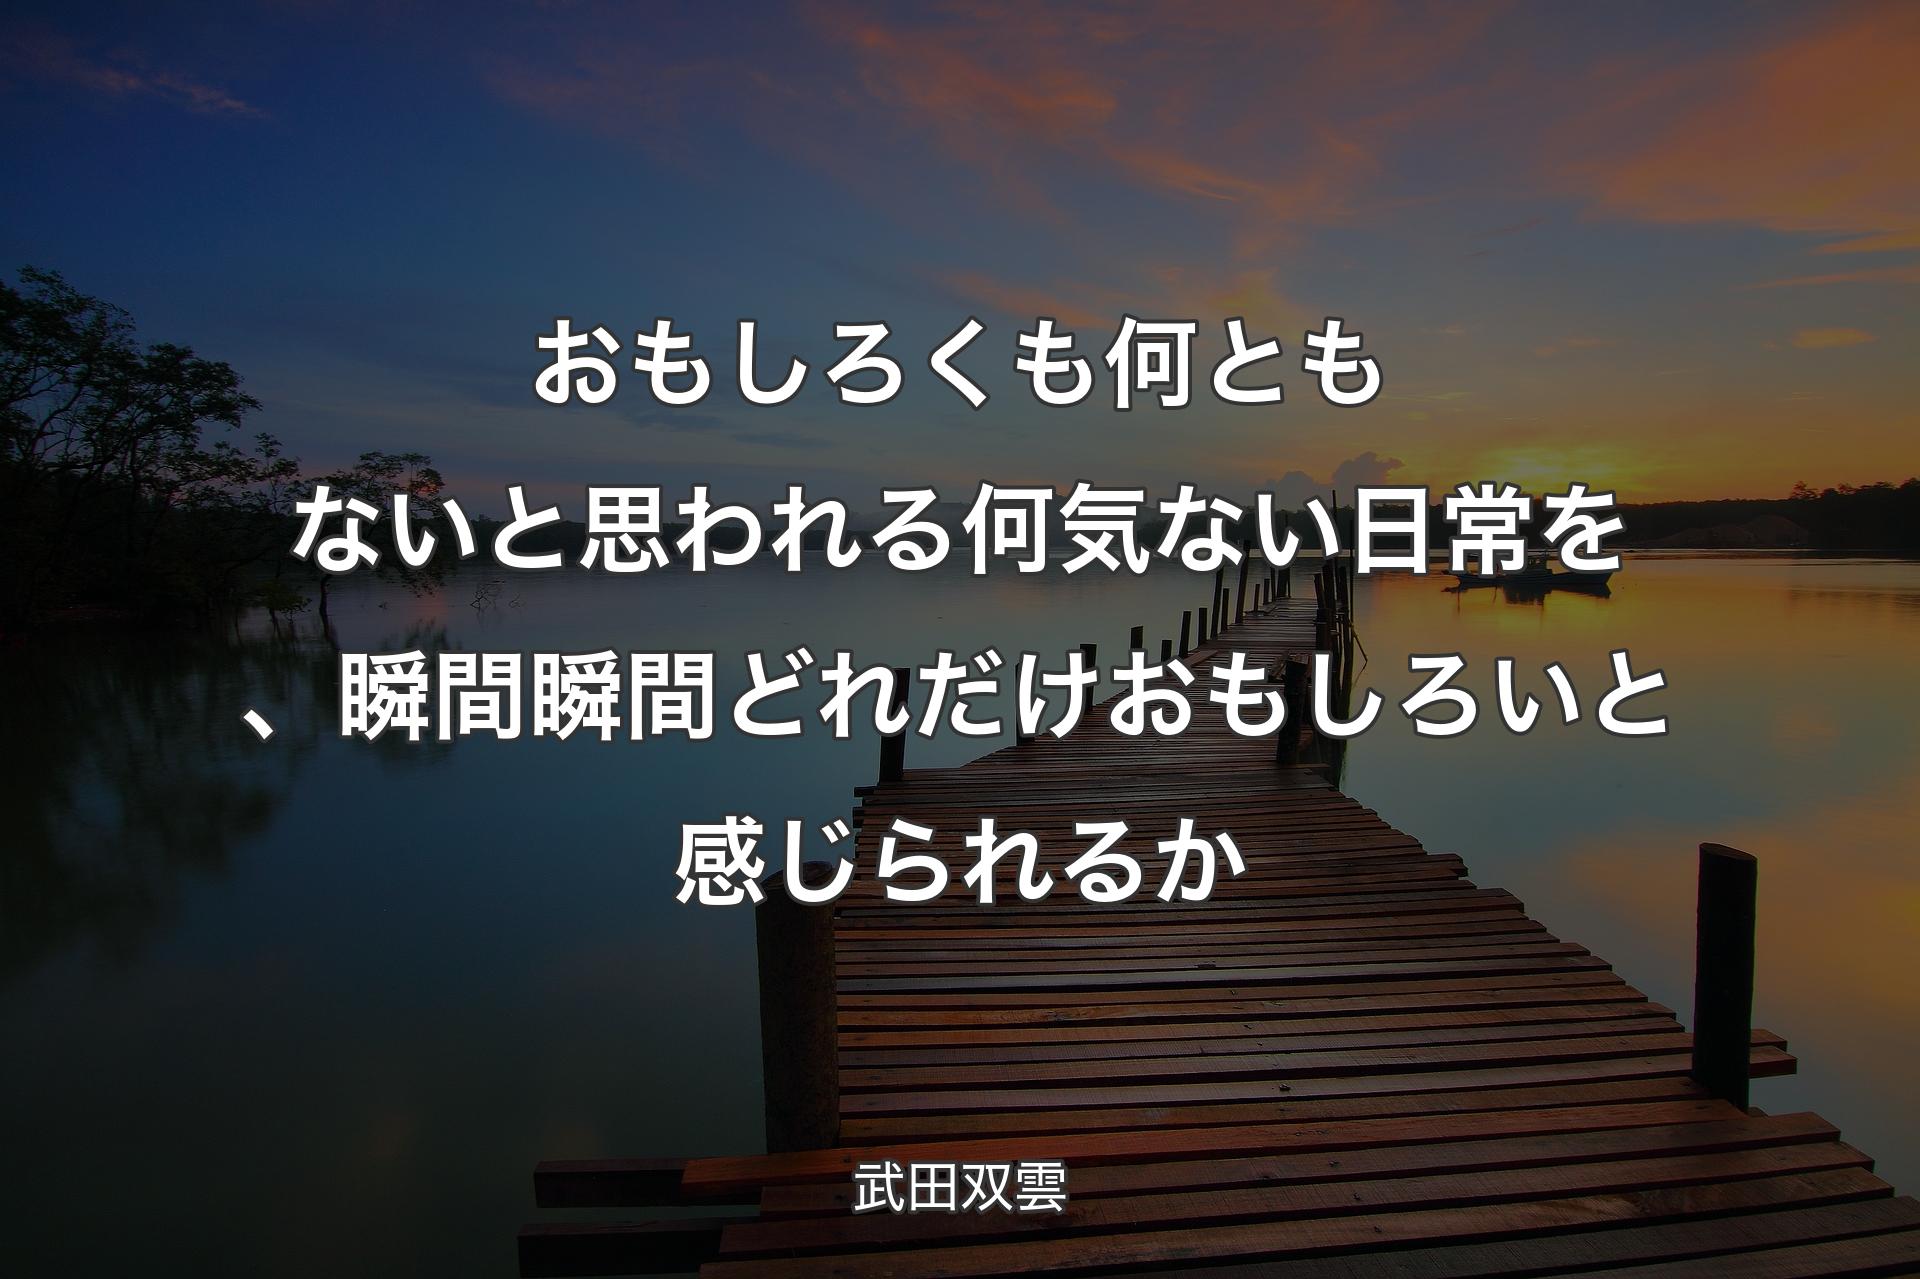 おもしろくも何ともないと思われる何気ない日常を、瞬間瞬間どれだけおもしろいと感じられるか - 武田双雲